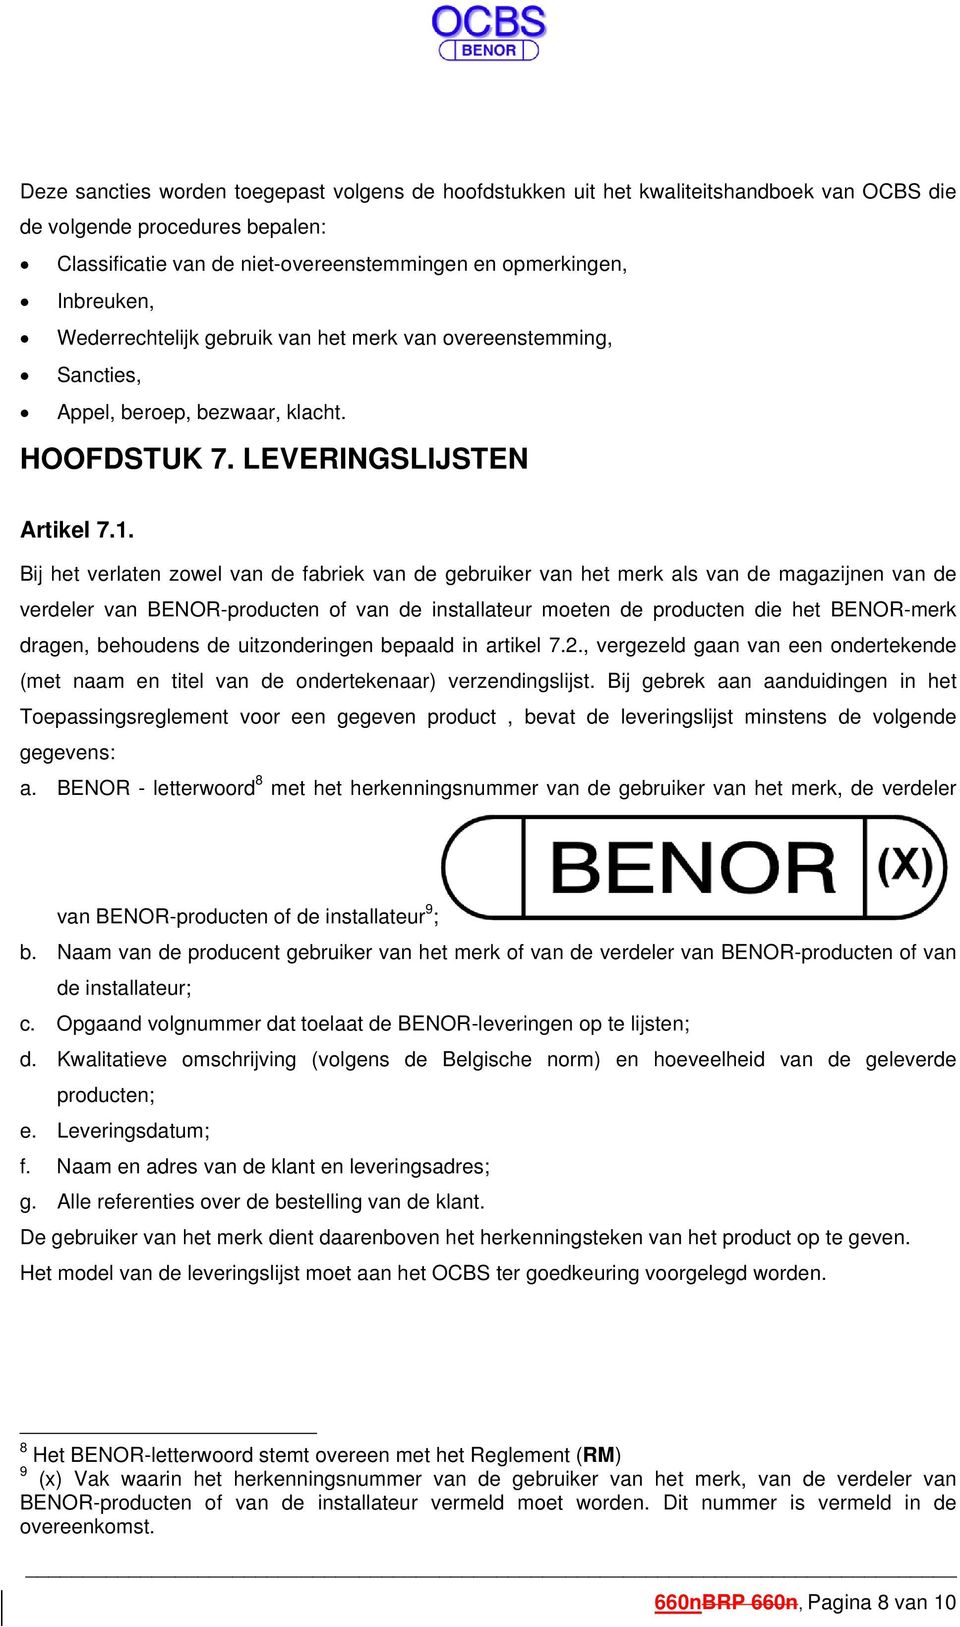 Bij het verlaten zowel van de fabriek van de gebruiker van het merk als van de magazijnen van de verdeler van BENOR-producten of van de installateur moeten de producten die het BENOR-merk dragen,